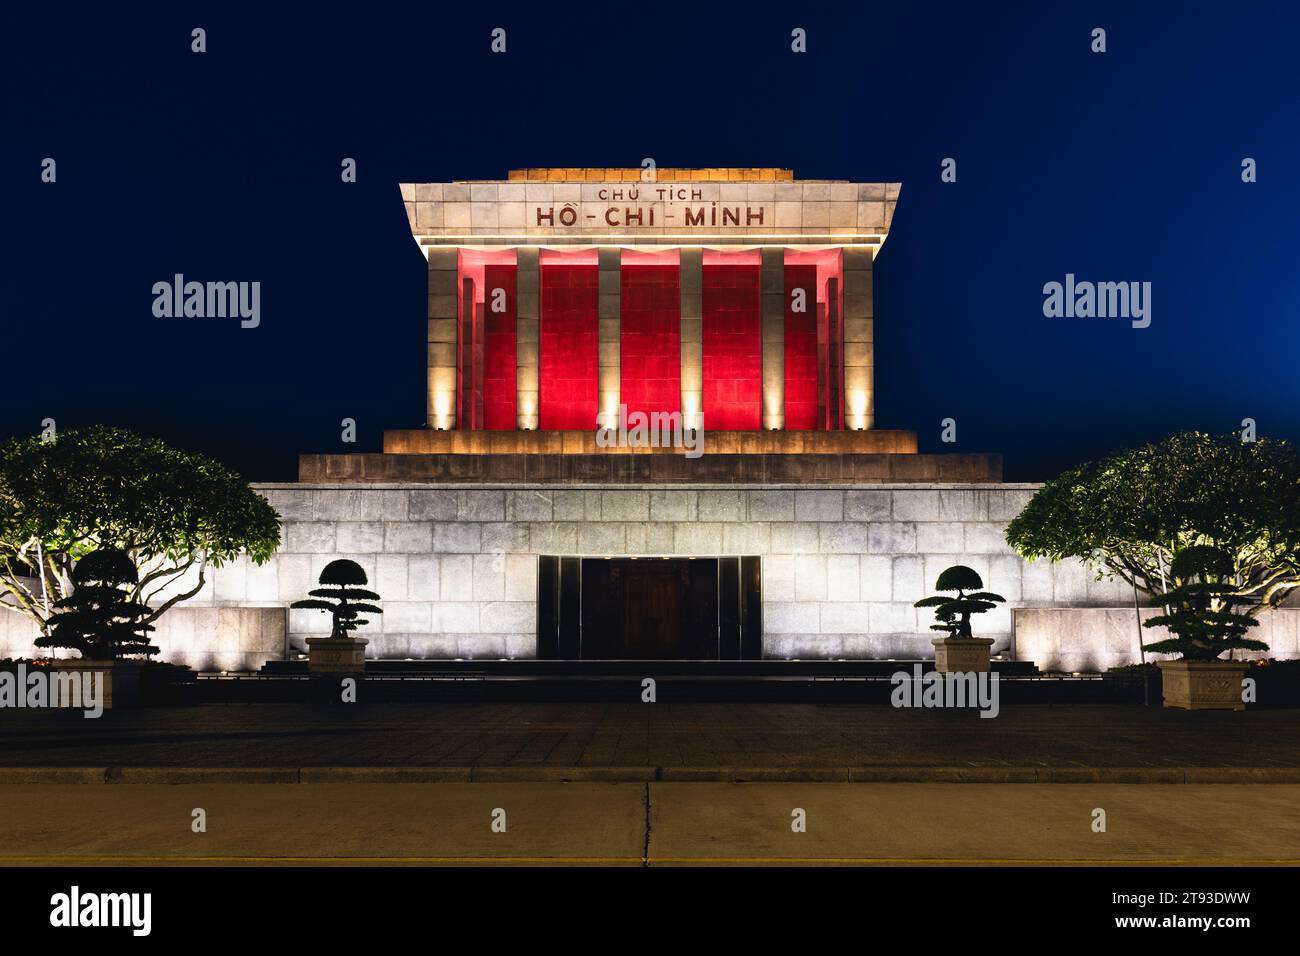 Ho Chi Minh Mausolée, lieu de repos du chef révolutionnaire vietnamien et président, à Hanoi, Vietnam. Traduction : Président Ho Chi Minh. Banque D'Images